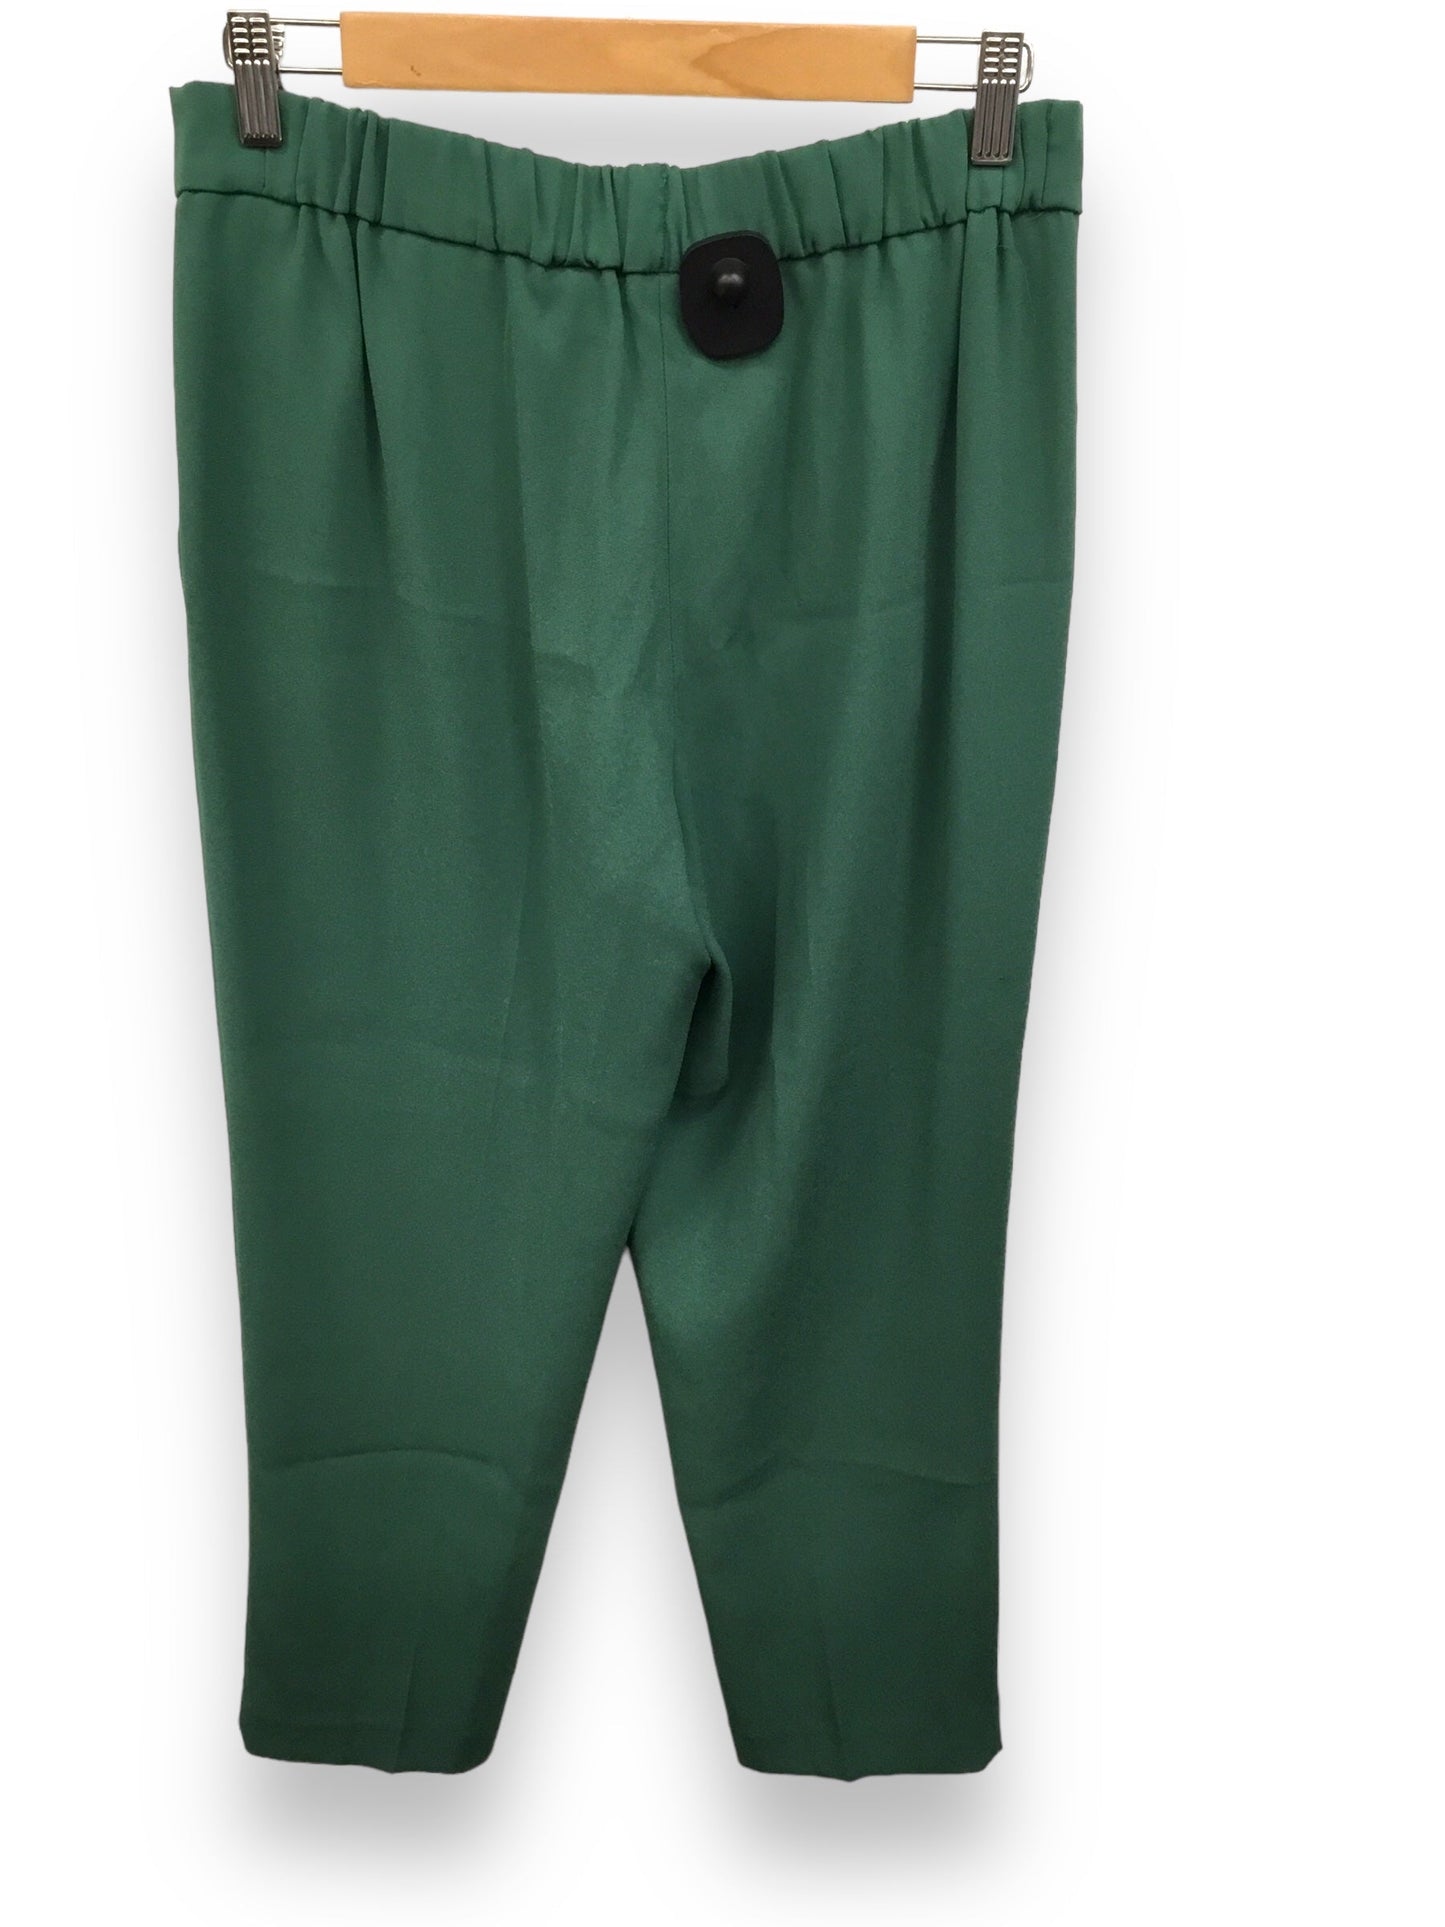 Green Pants Designer Babaton, Size 8